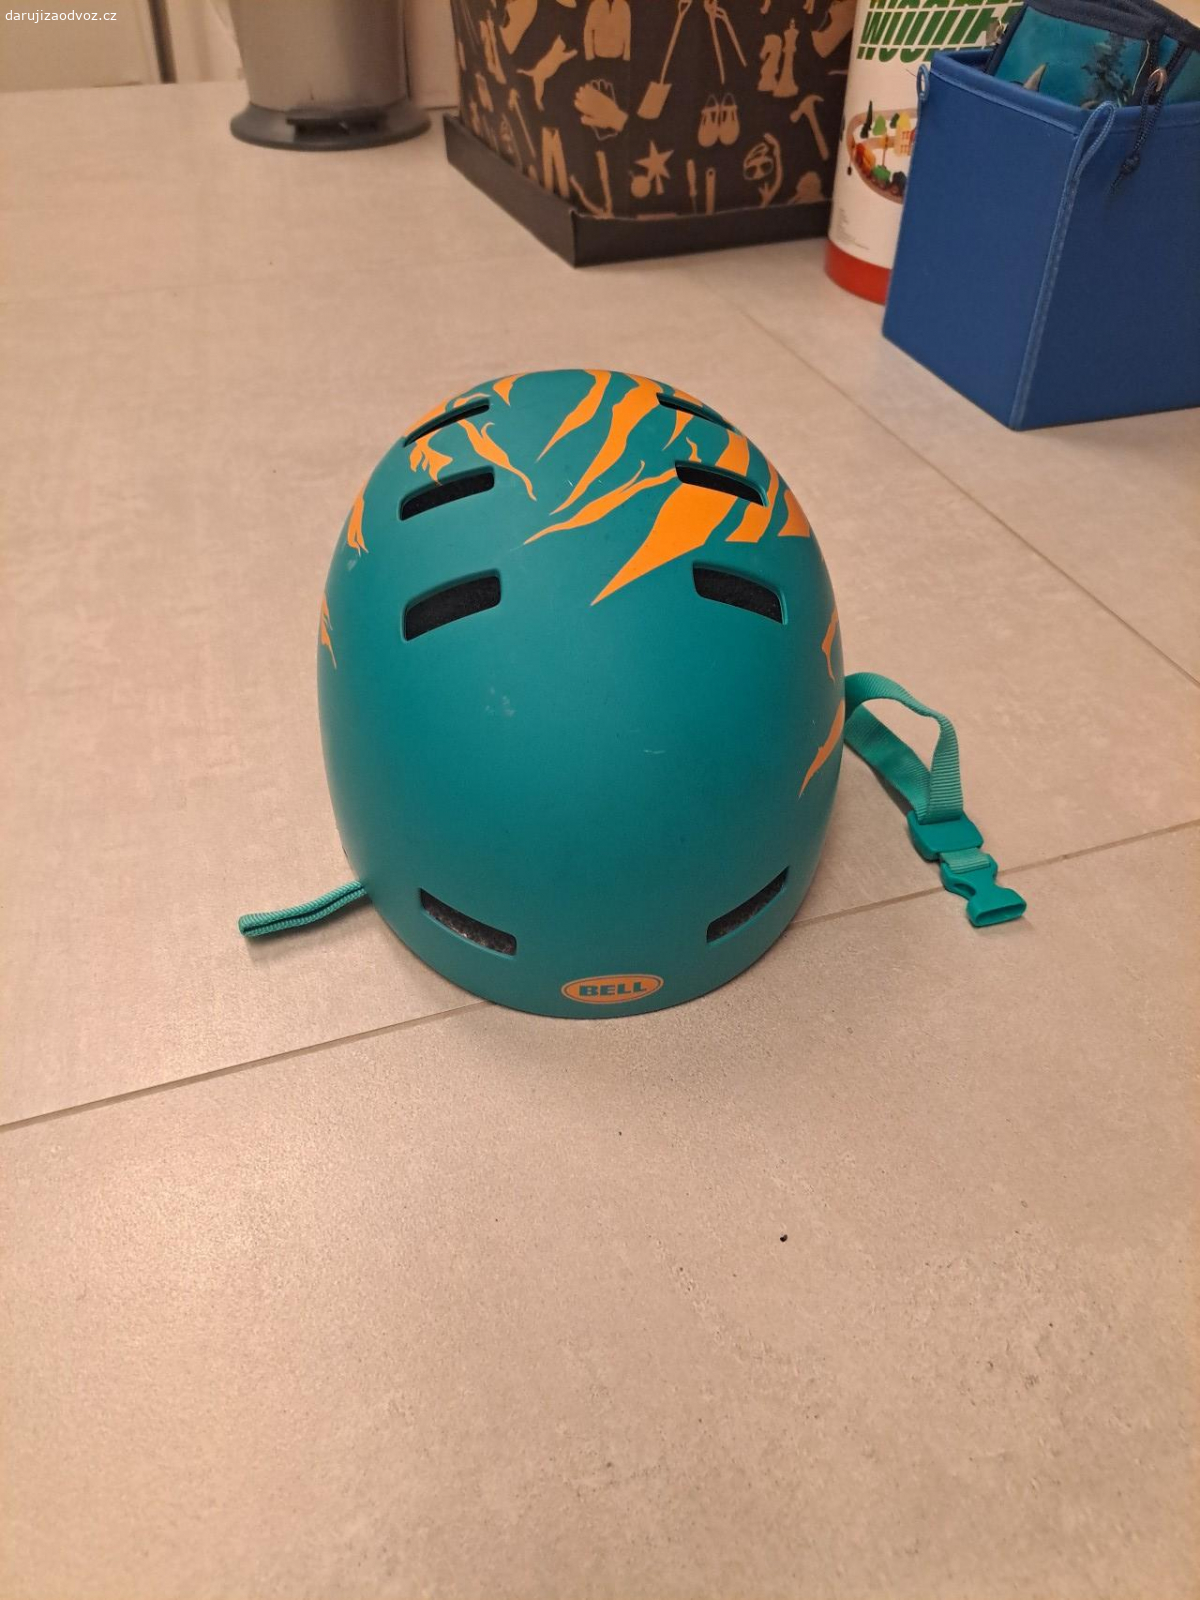 daruji helmu. zeleno oranžová helma velikost S 51-55 cm od značky Bell